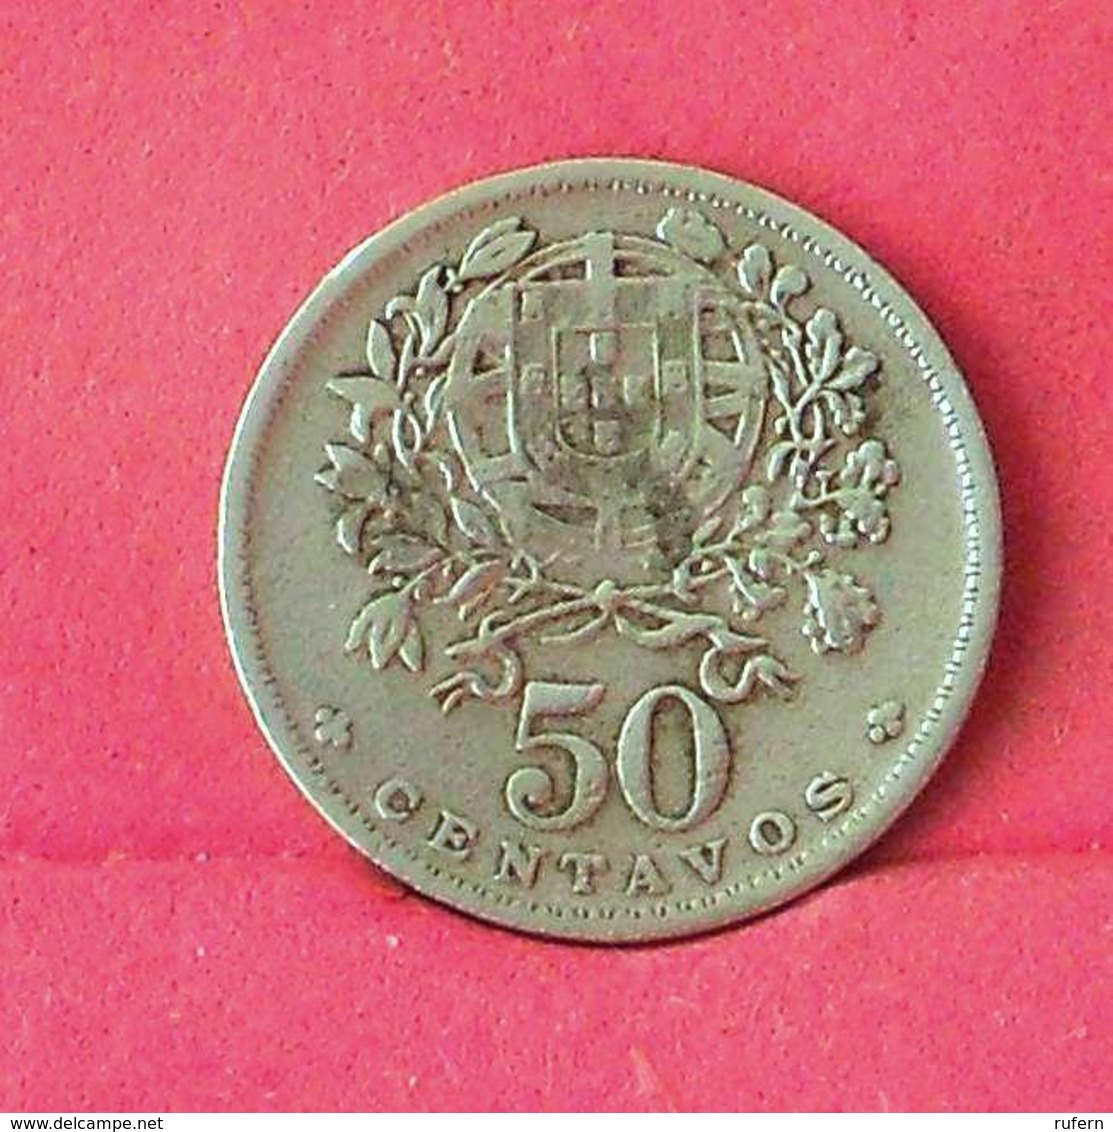 PORTUGAL 50 CENTAVOS 1935 -    KM# 577 - (Nº27515) - Portugal